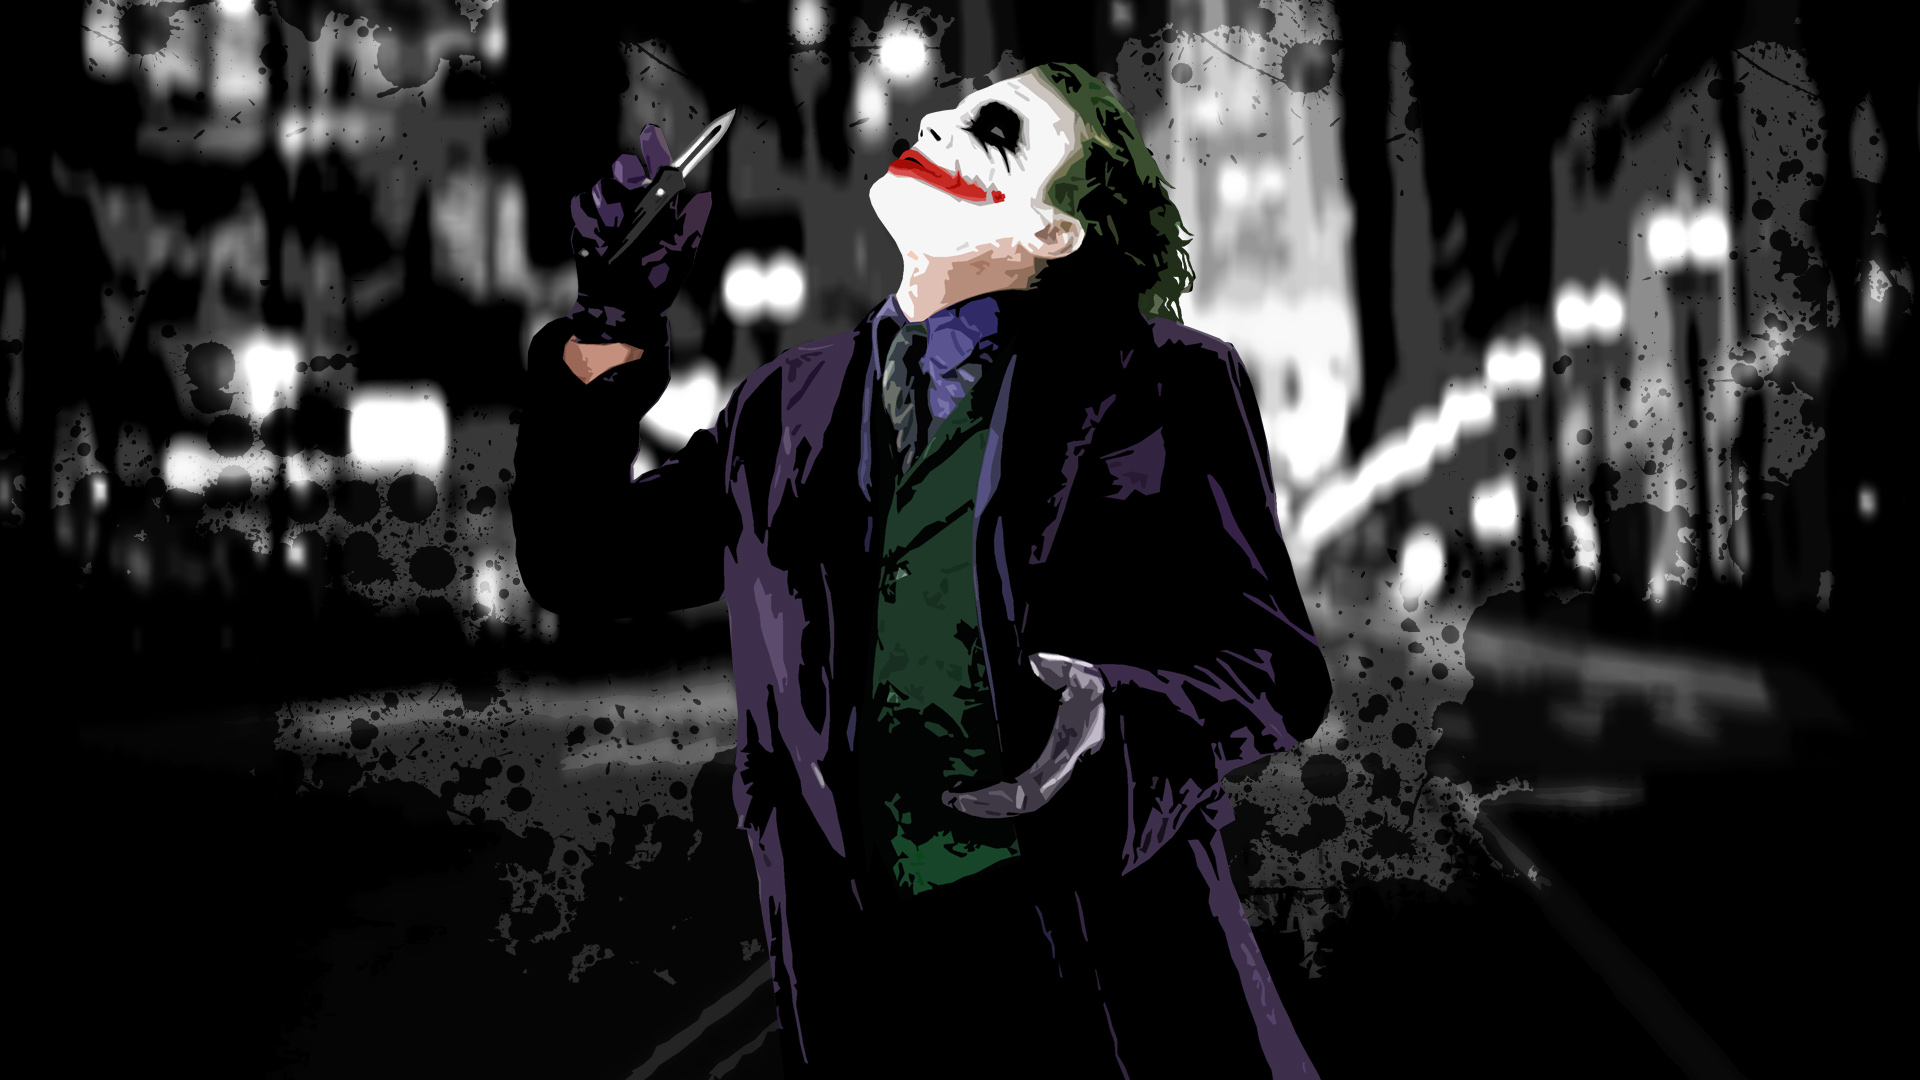 Download Wallpaper Joker 3d Image Num 56